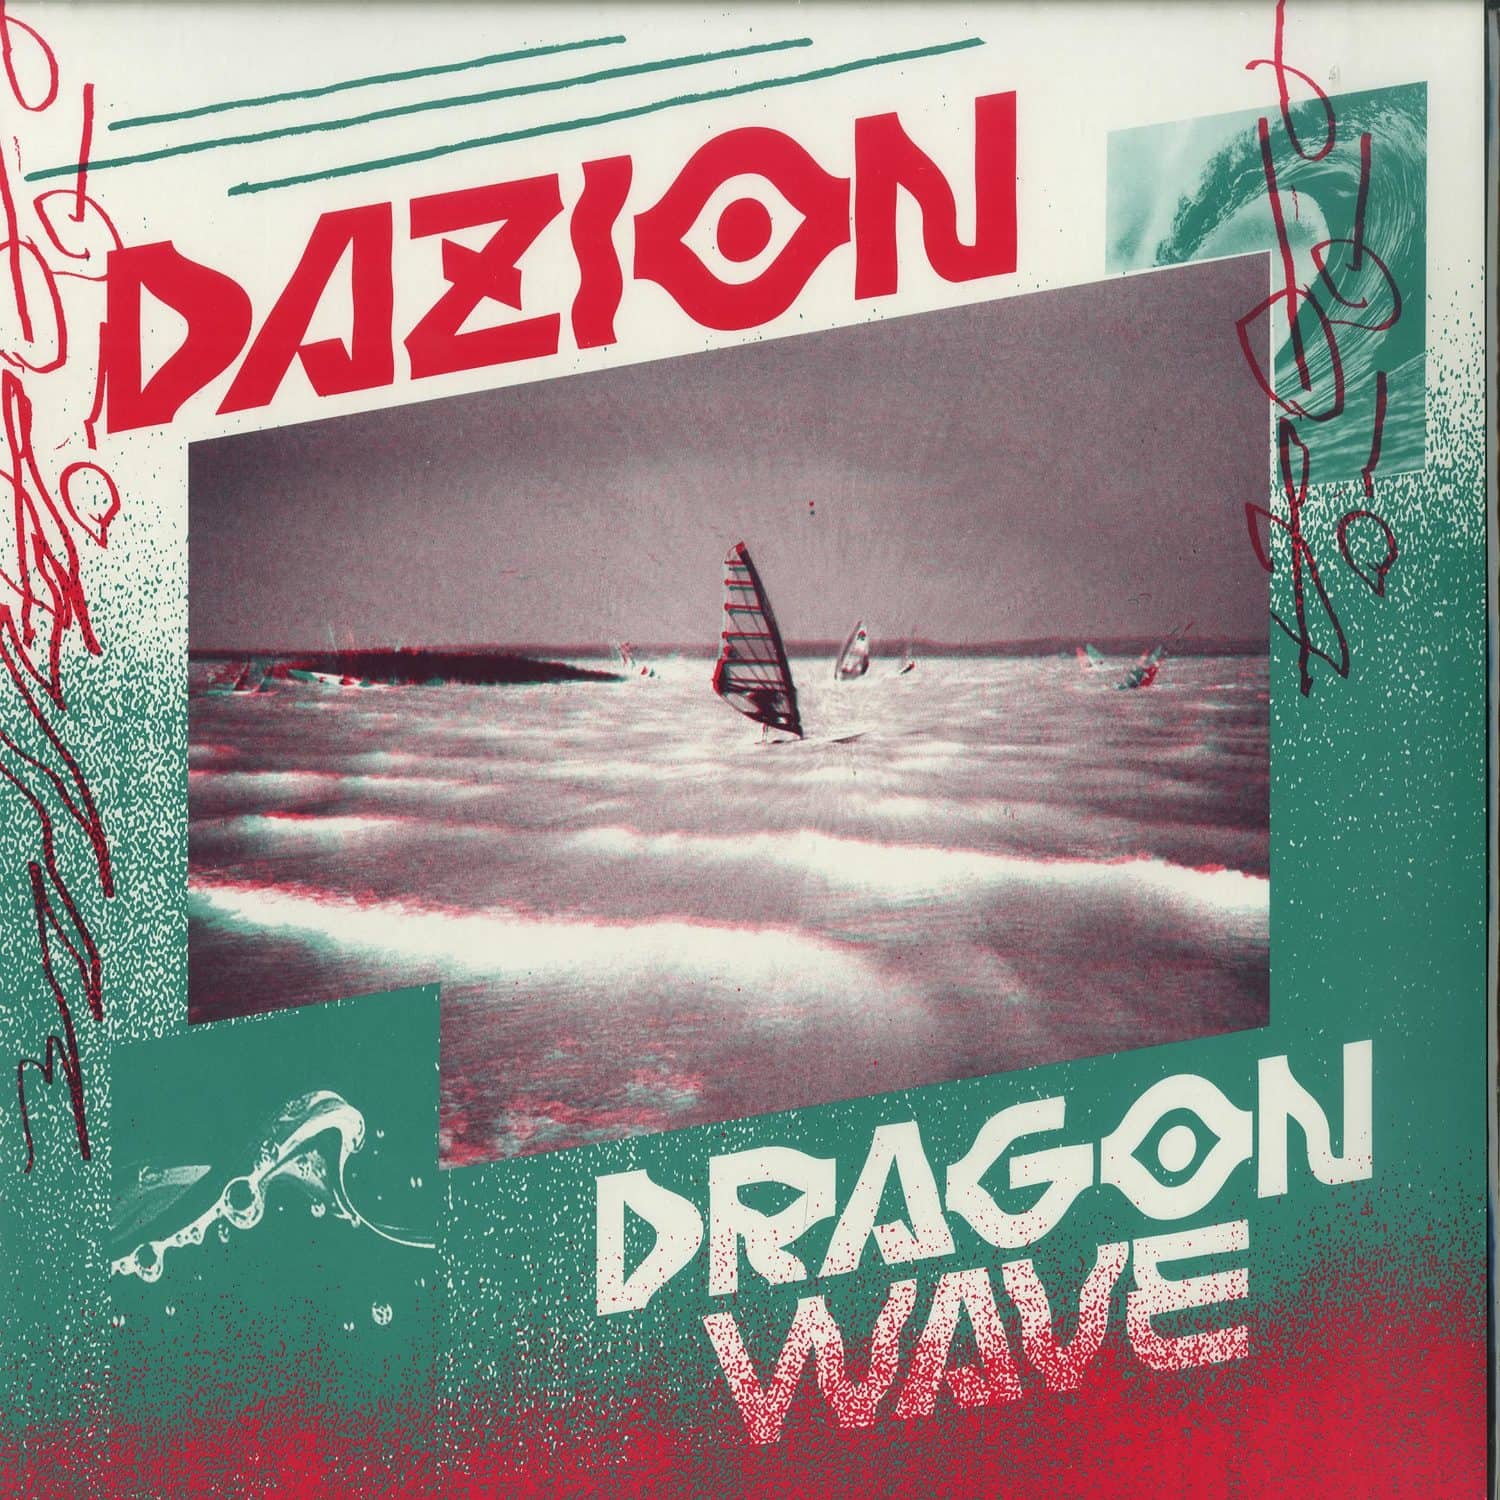 Dazion - DRAGON WAVE/VX LTD